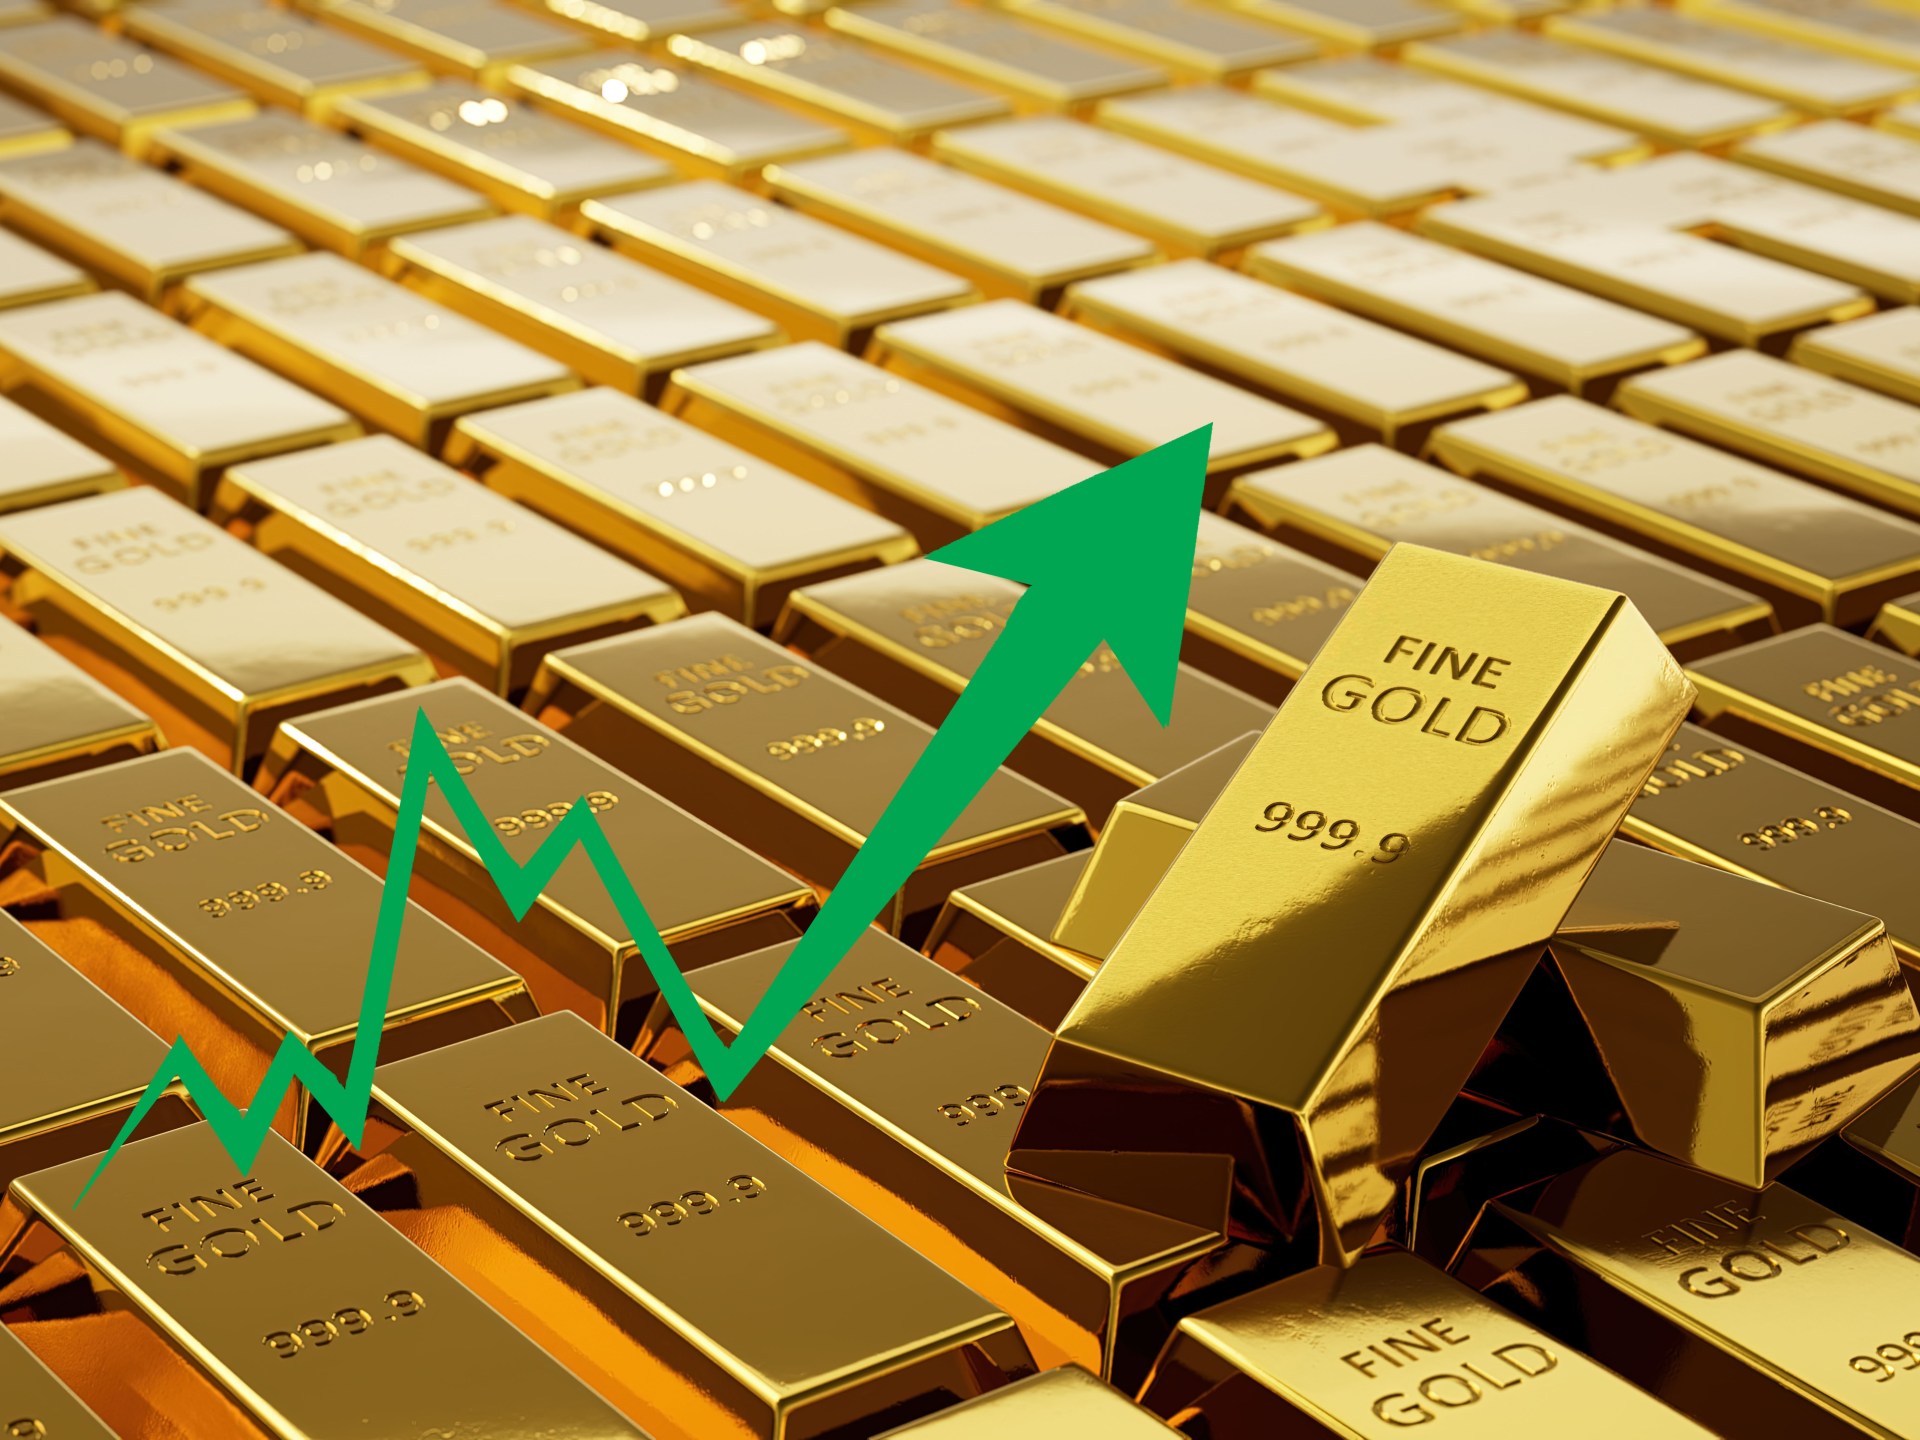 الذهب عند أعلى مستوى في 6 أشهر مع تراجع الدولار | اقتصاد – البوكس نيوز